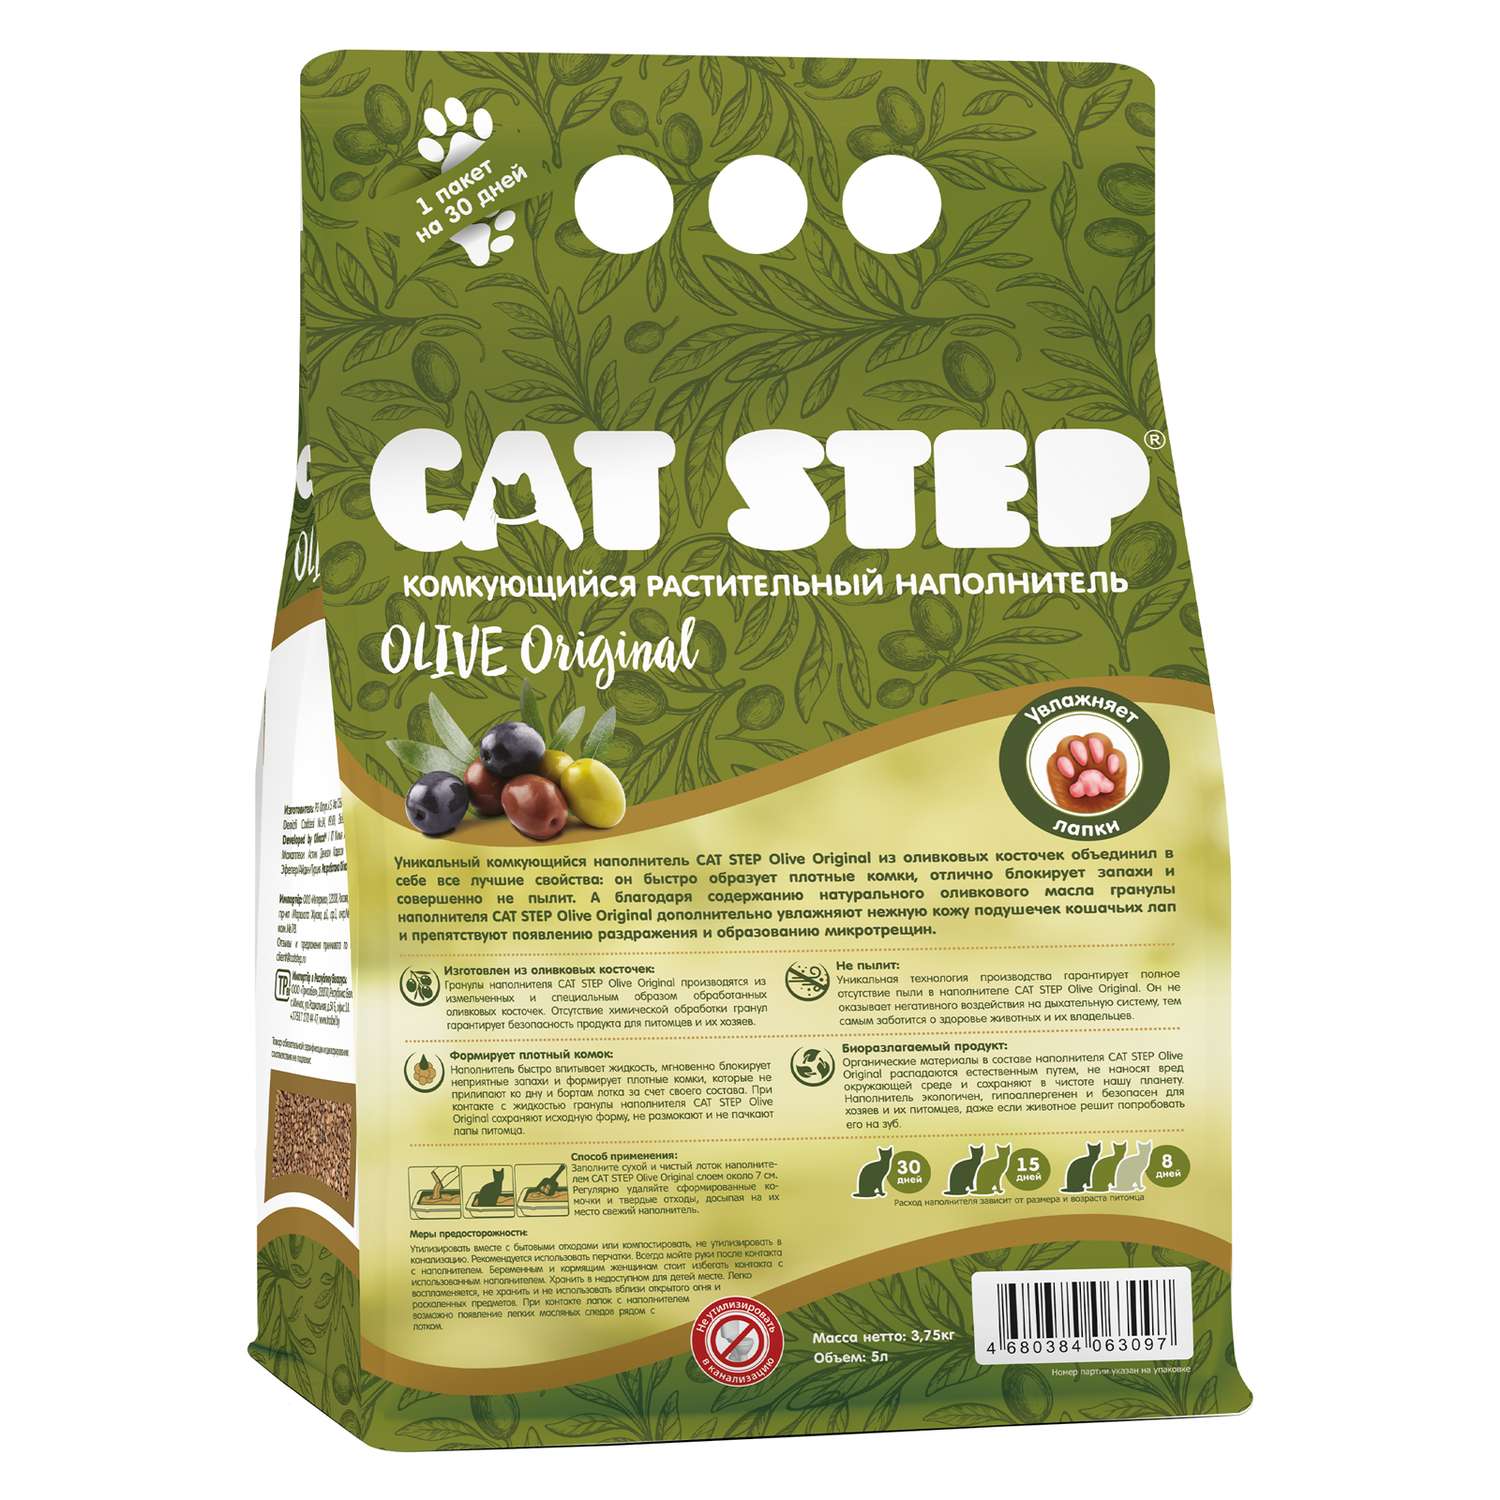 Наполнитель для кошек Cat Step Olive Original комкующийся растительный 5л - фото 3